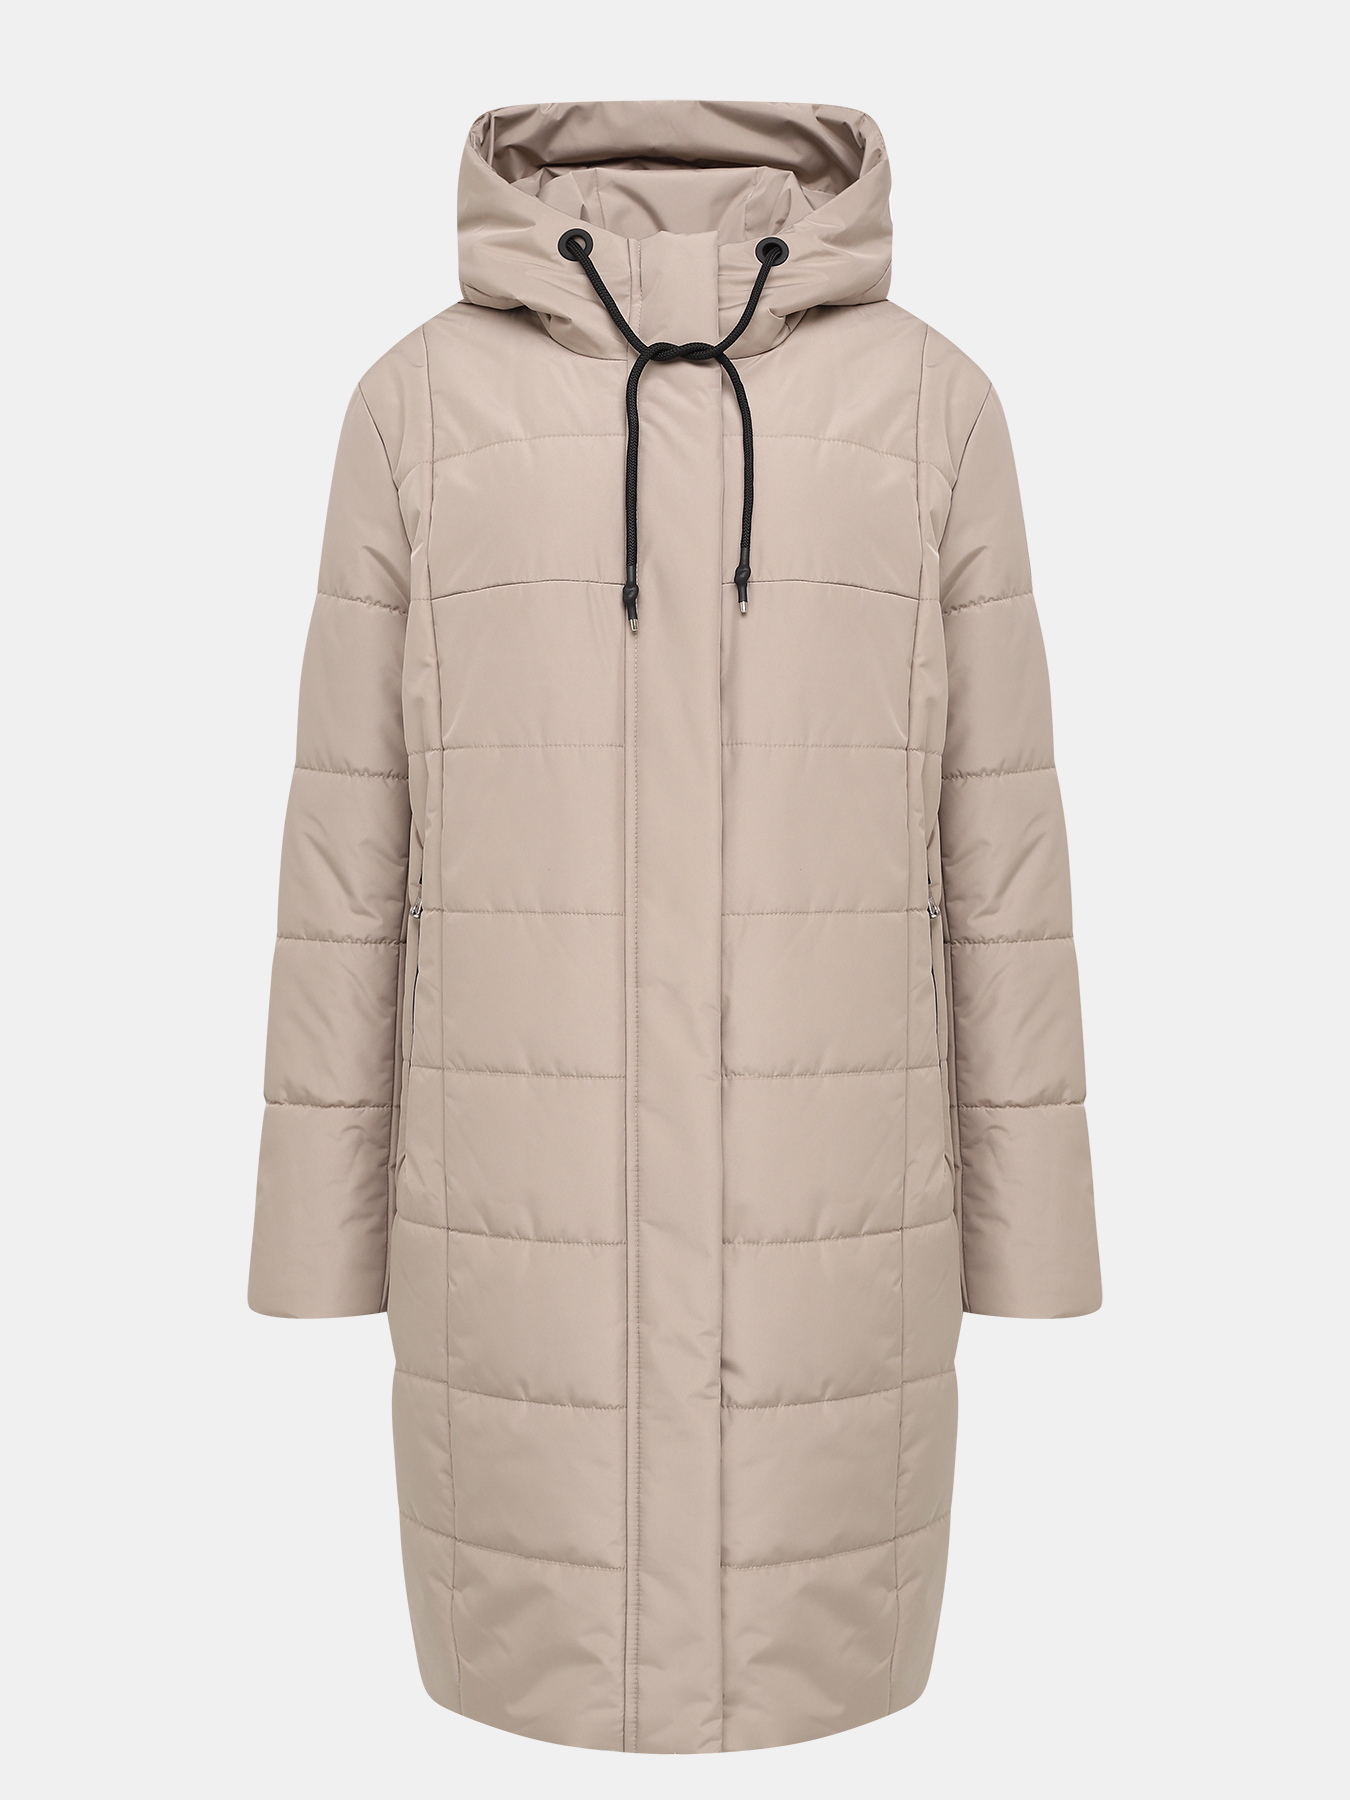 Пальто зимнее Maritta 433536-018, цвет бежевый, размер 36